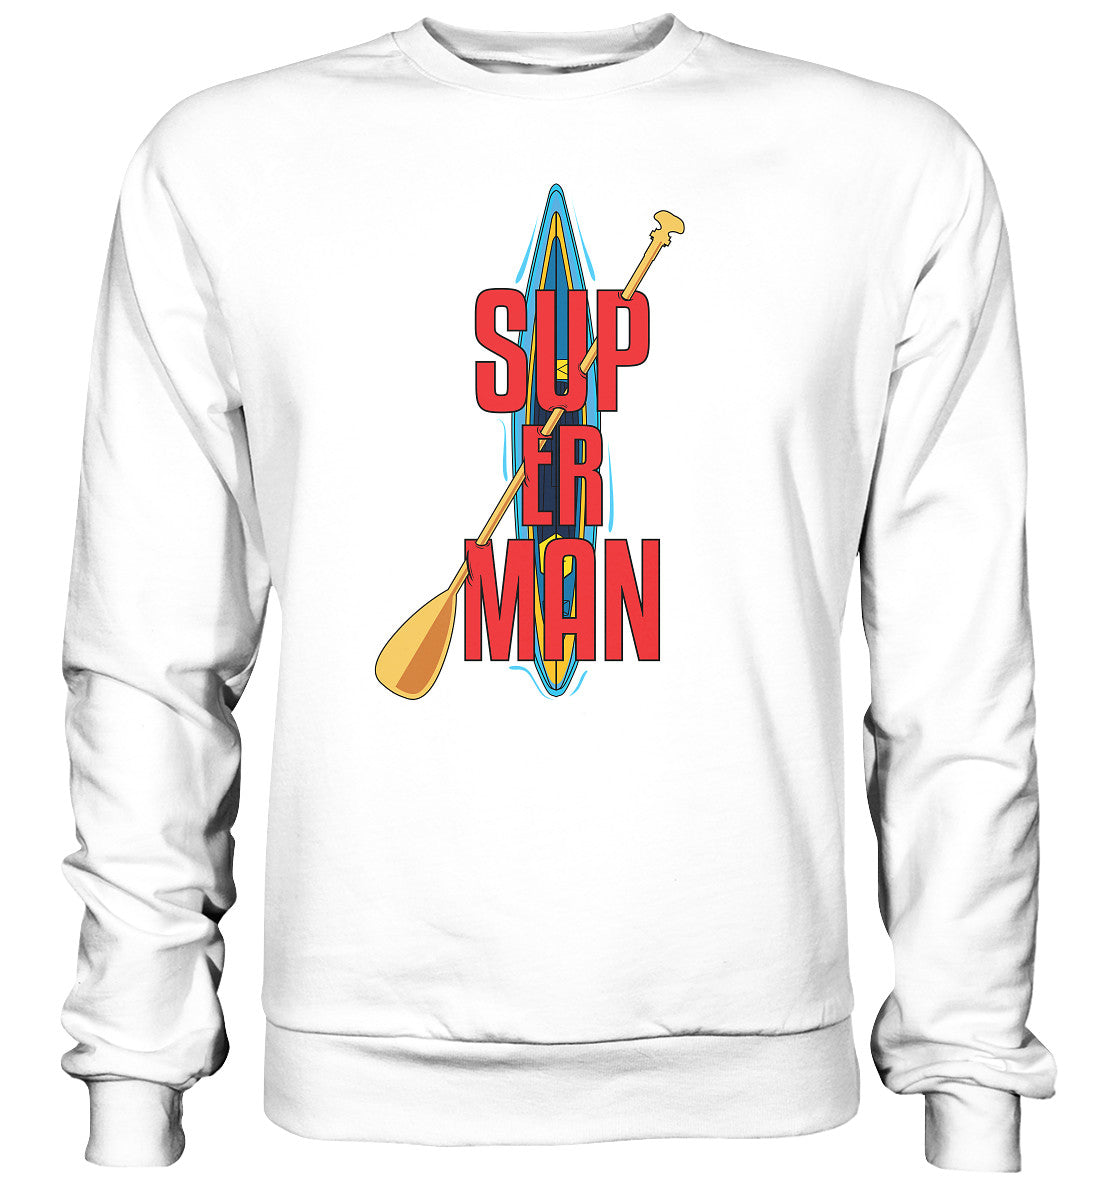 SUP ER MAN - Basic Sweatshirt